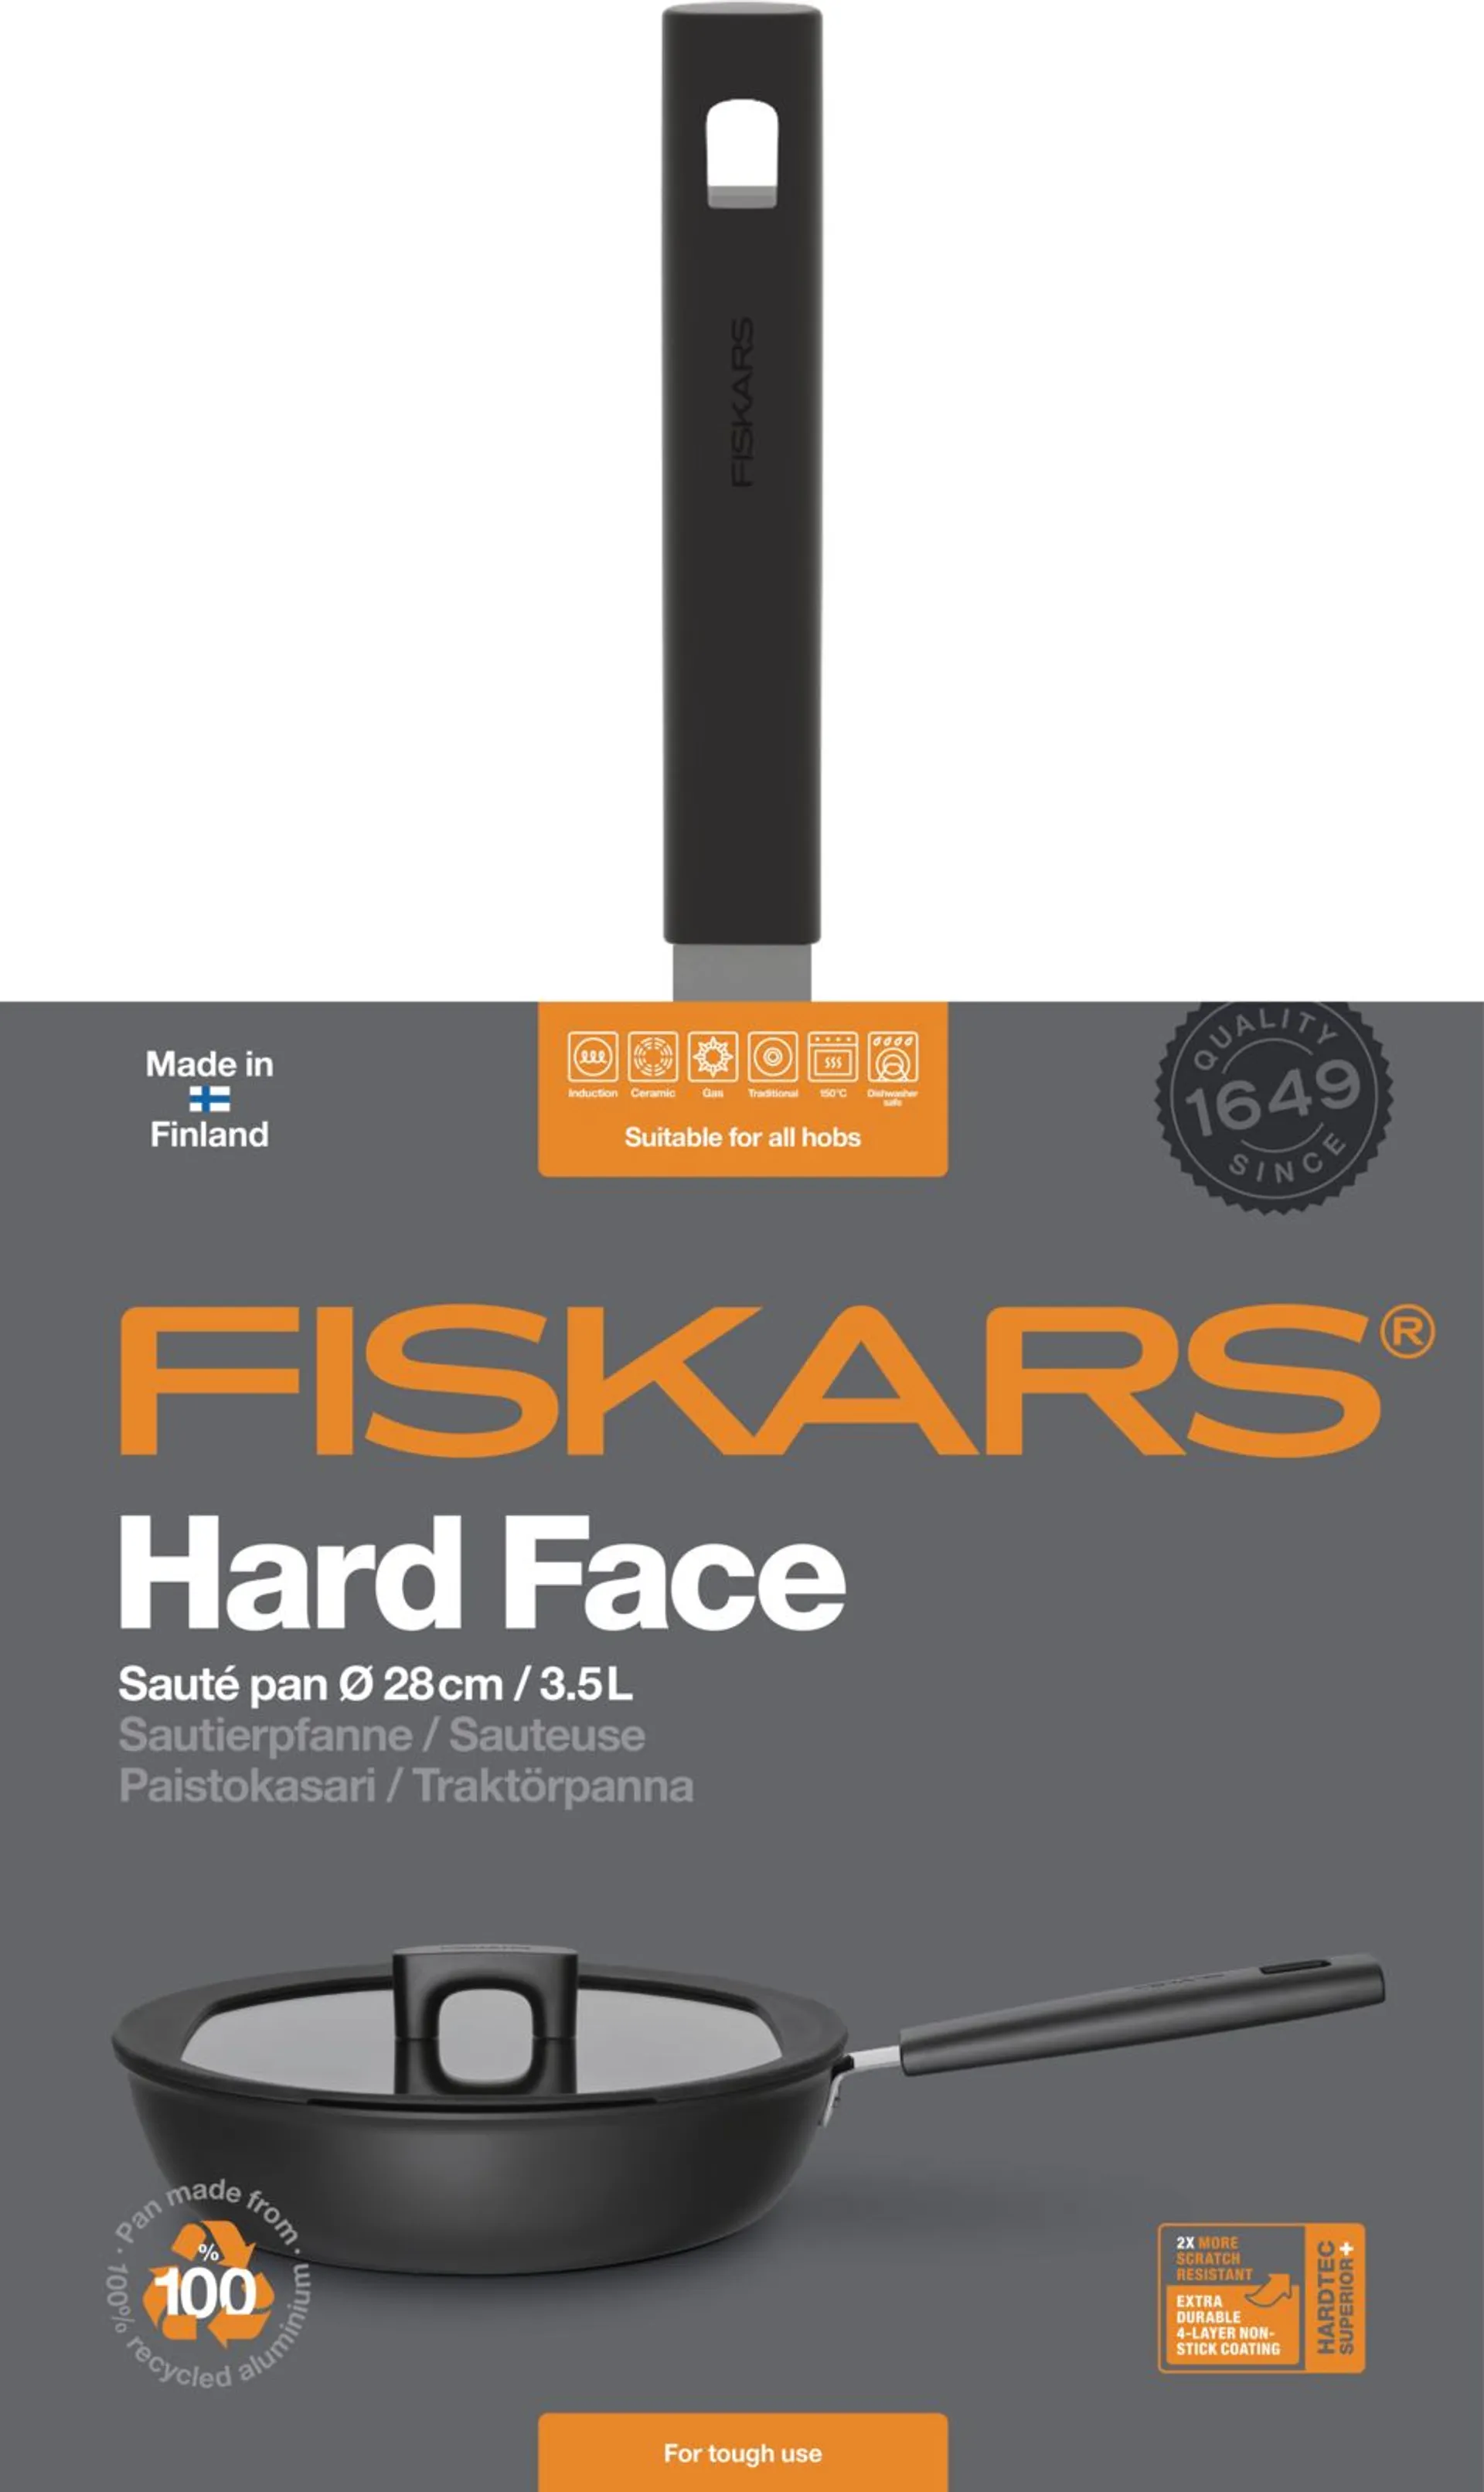 Fiskars Hard Face 28cm paistokasari kannella - 2